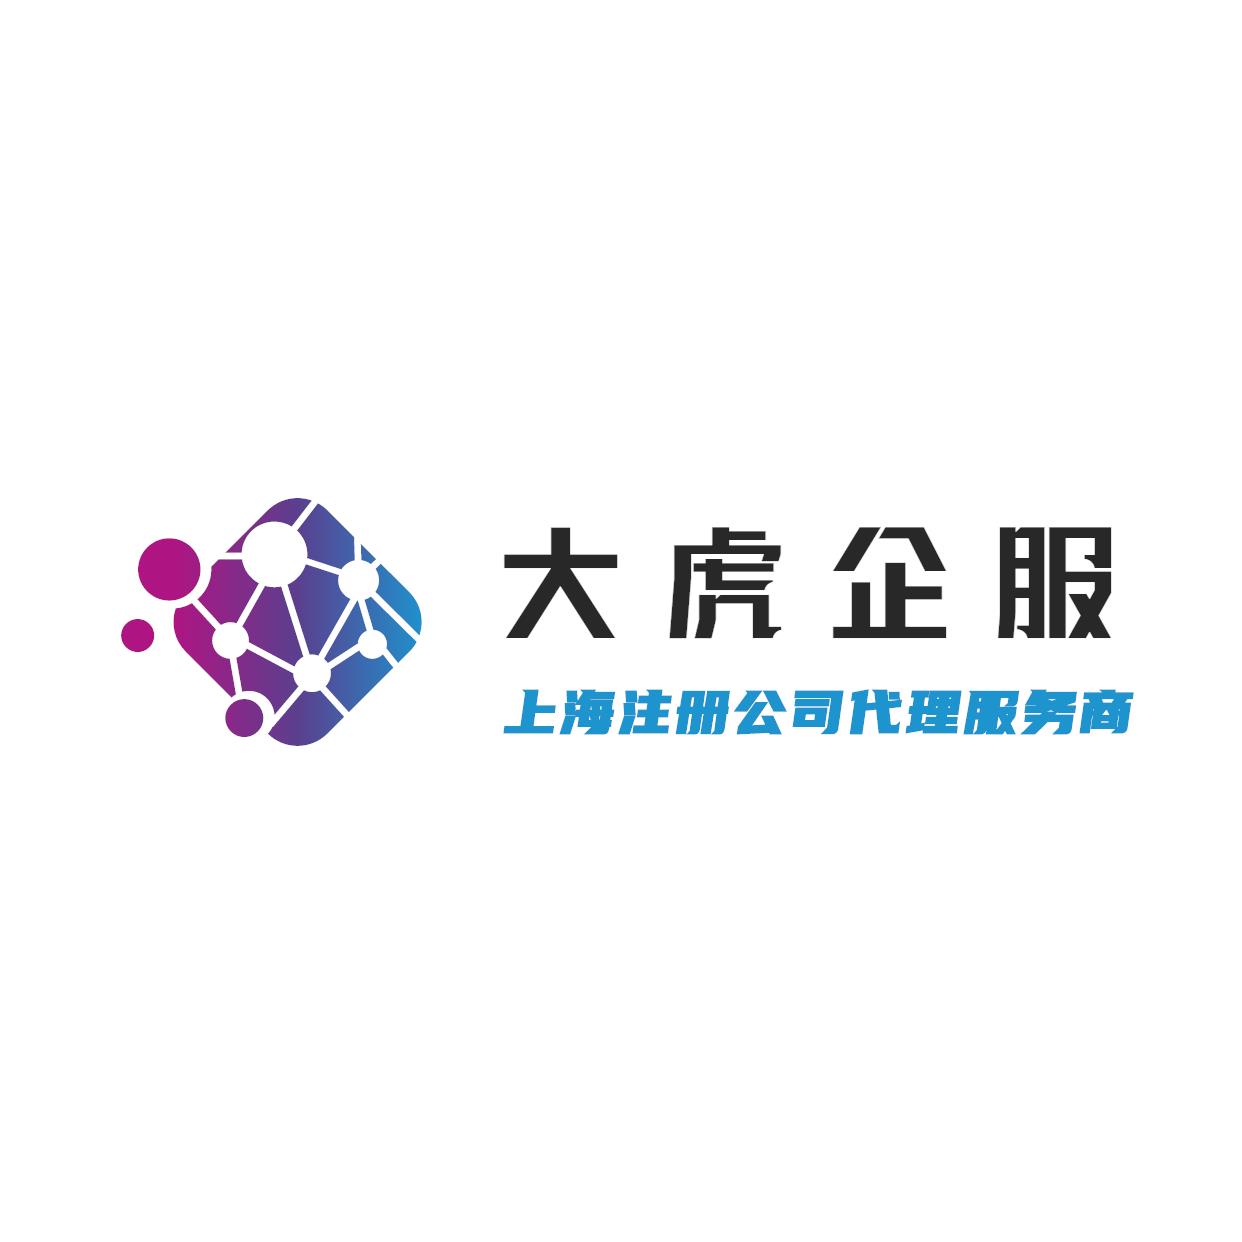 上海注册 检测设备公司 流程